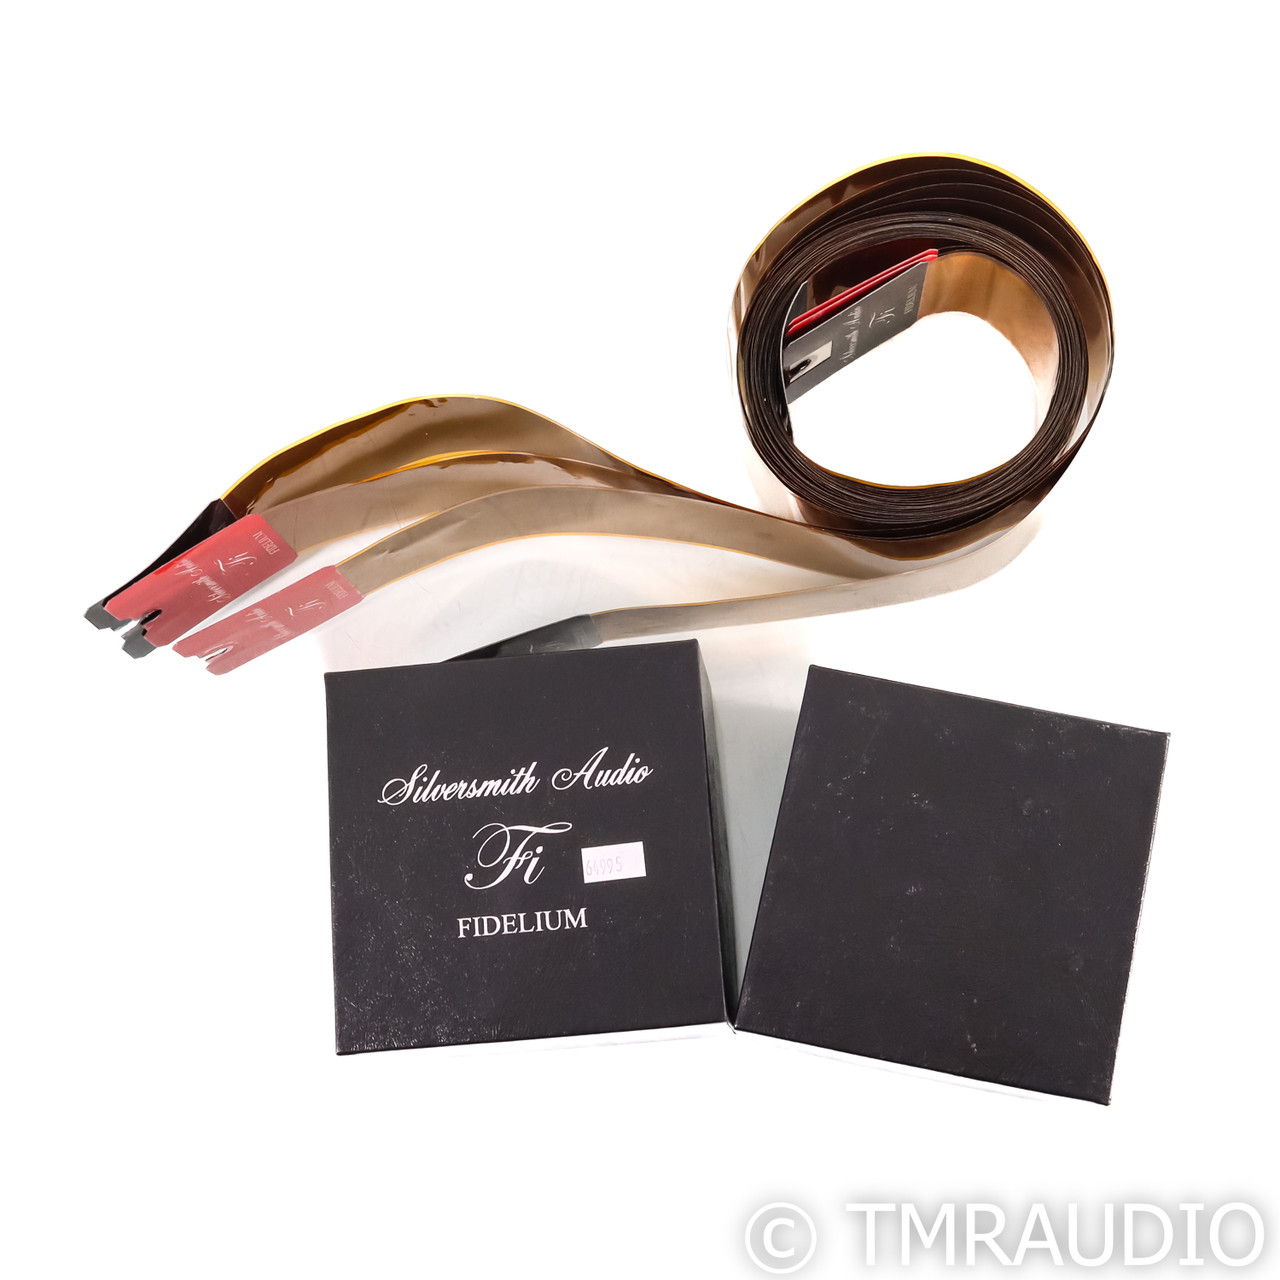 Silversmith Audio Fidelium Speaker Cables; 10ft Pair (6... 8